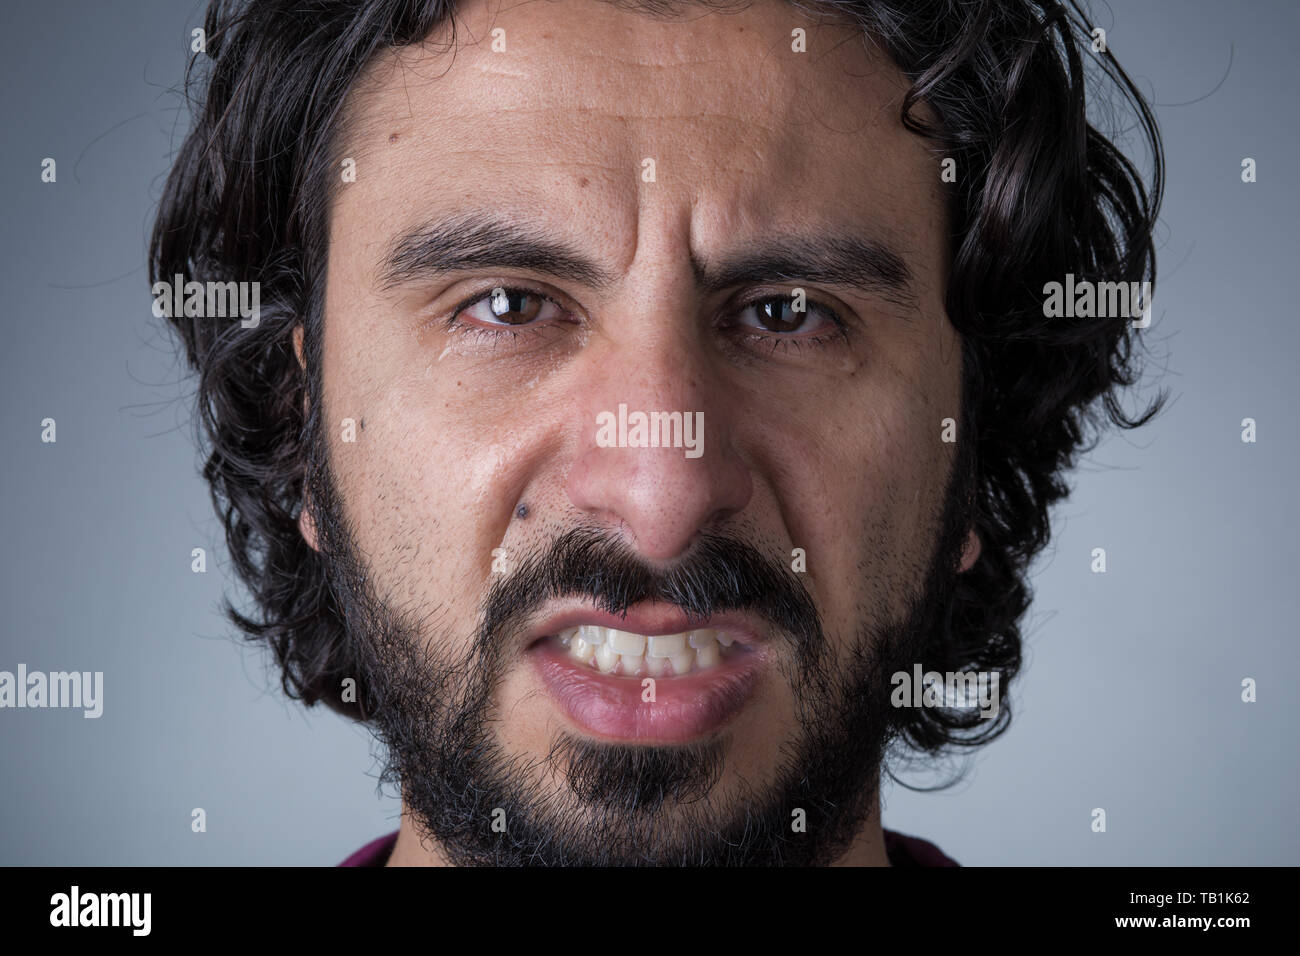 El hombre enojado con barba y cabello largo llanto mirando a la cámara Foto de stock